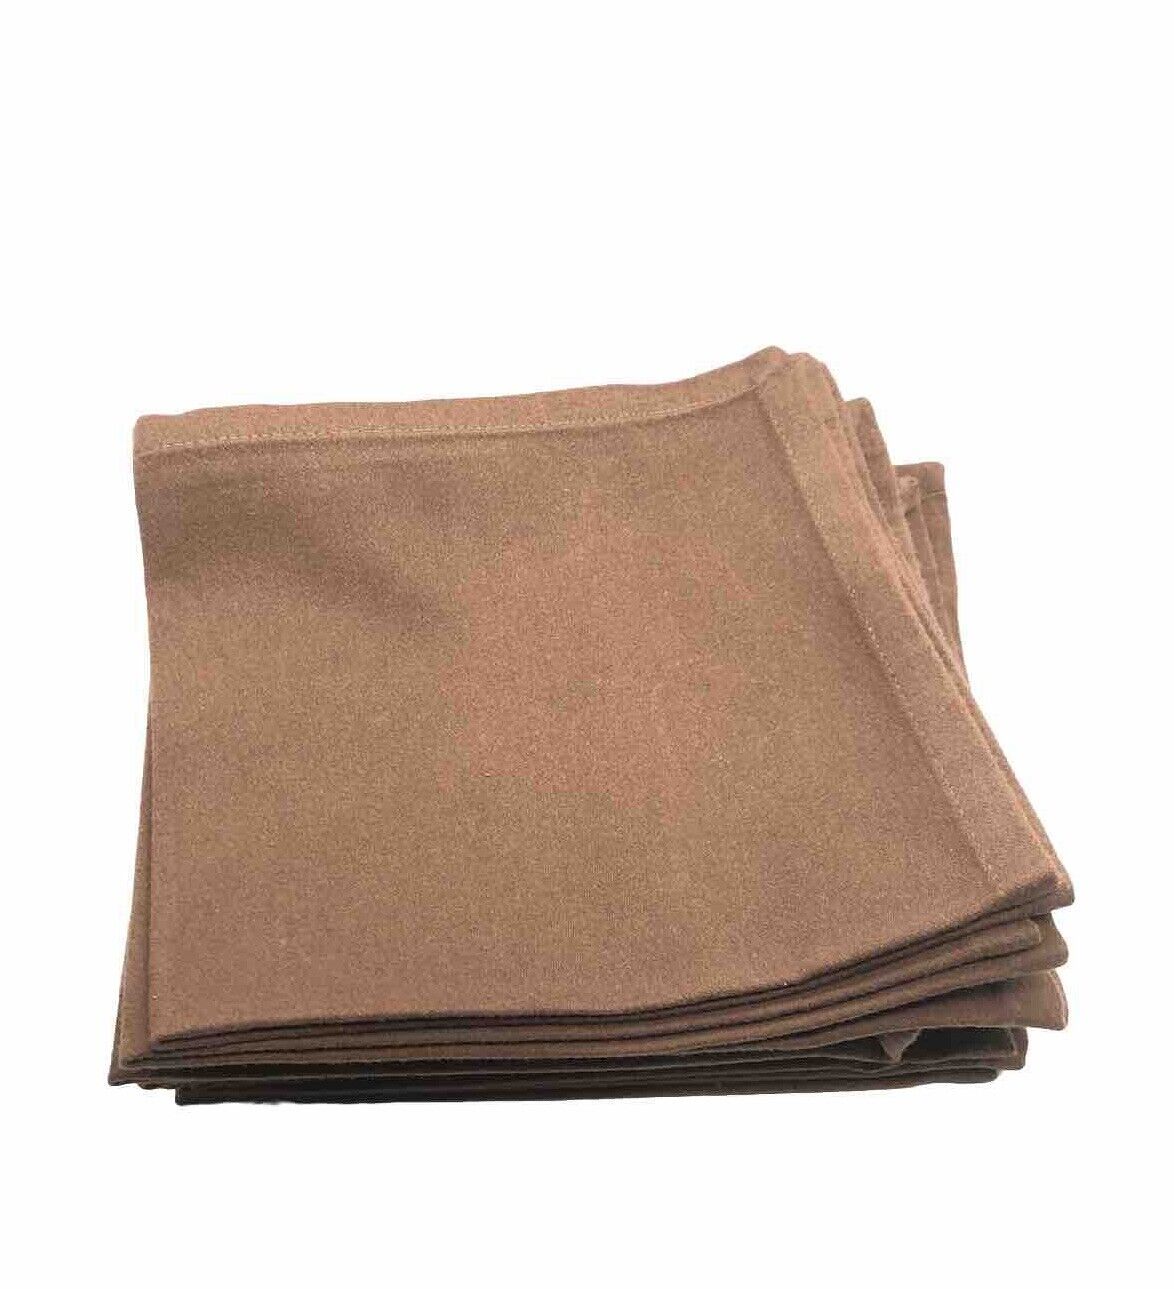 12 Brown Cloth Napkins Vintage Cotton Matched Set NWOT EXCELLENT CONDITION 16”